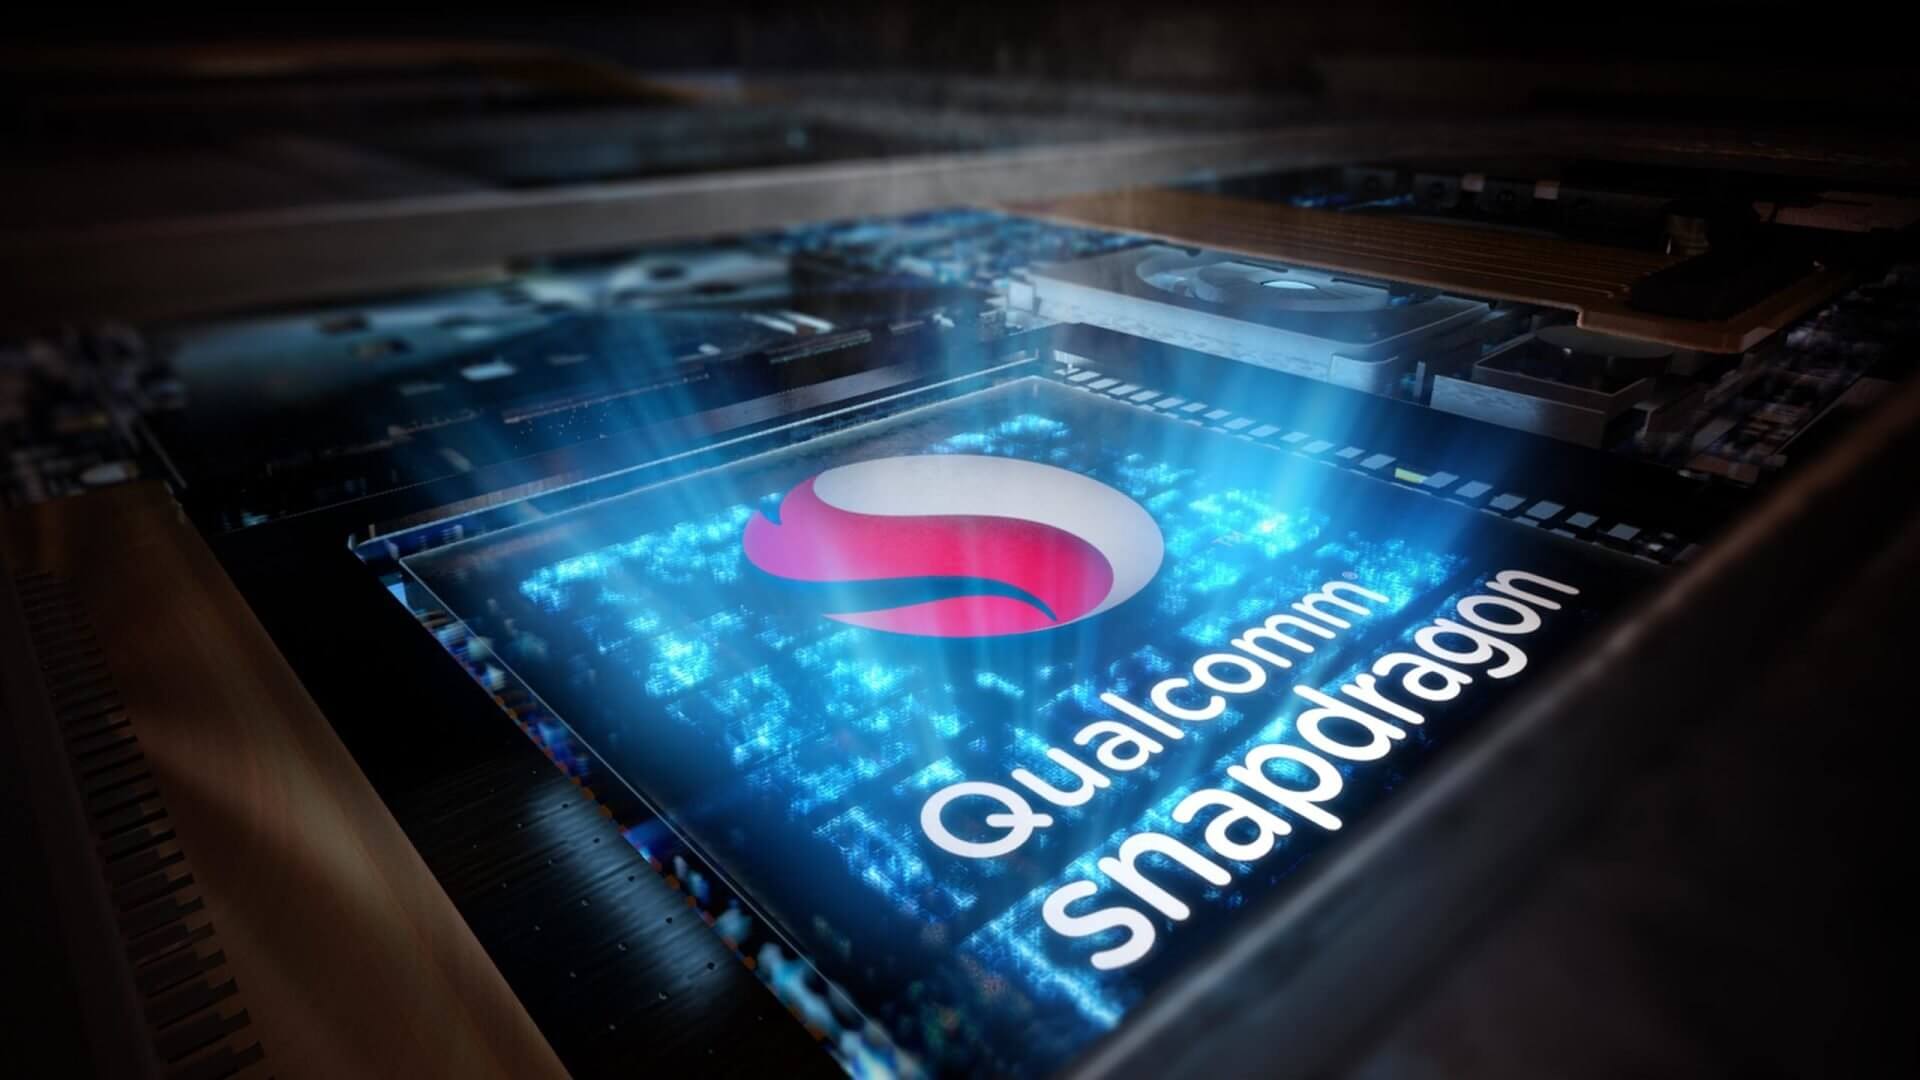 Snapdragon Qualcomm المعالج الموبايل